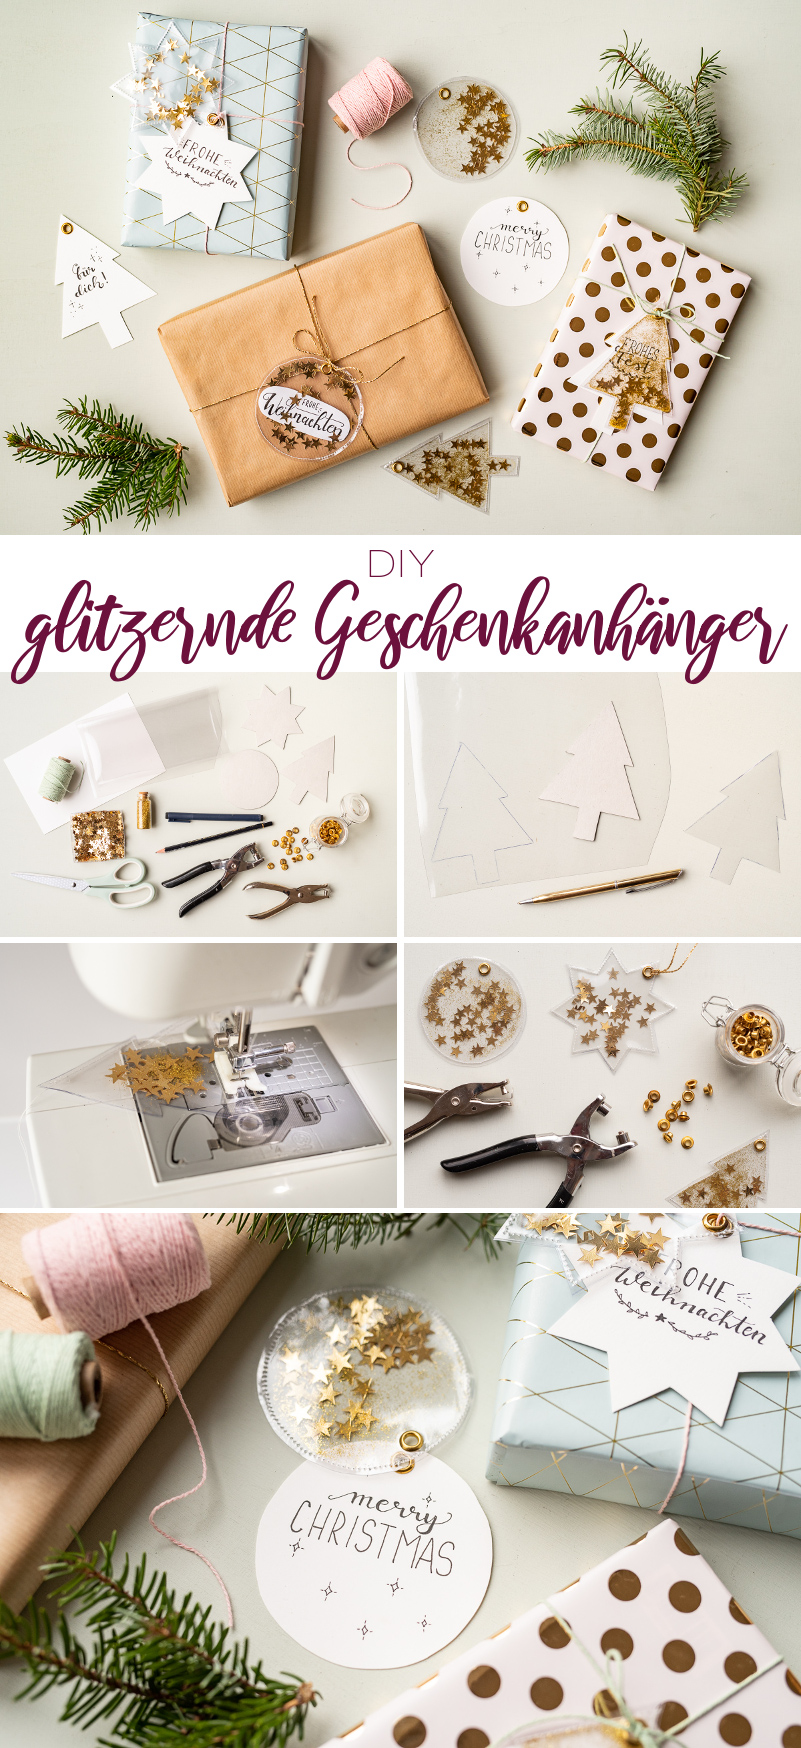 Anleitung für selbst gemachte DIY Geschenkanhänger aus Wachstuch mit Glitzer und Sternen als schöne Verpackung für Geschenke zu Weihnachten